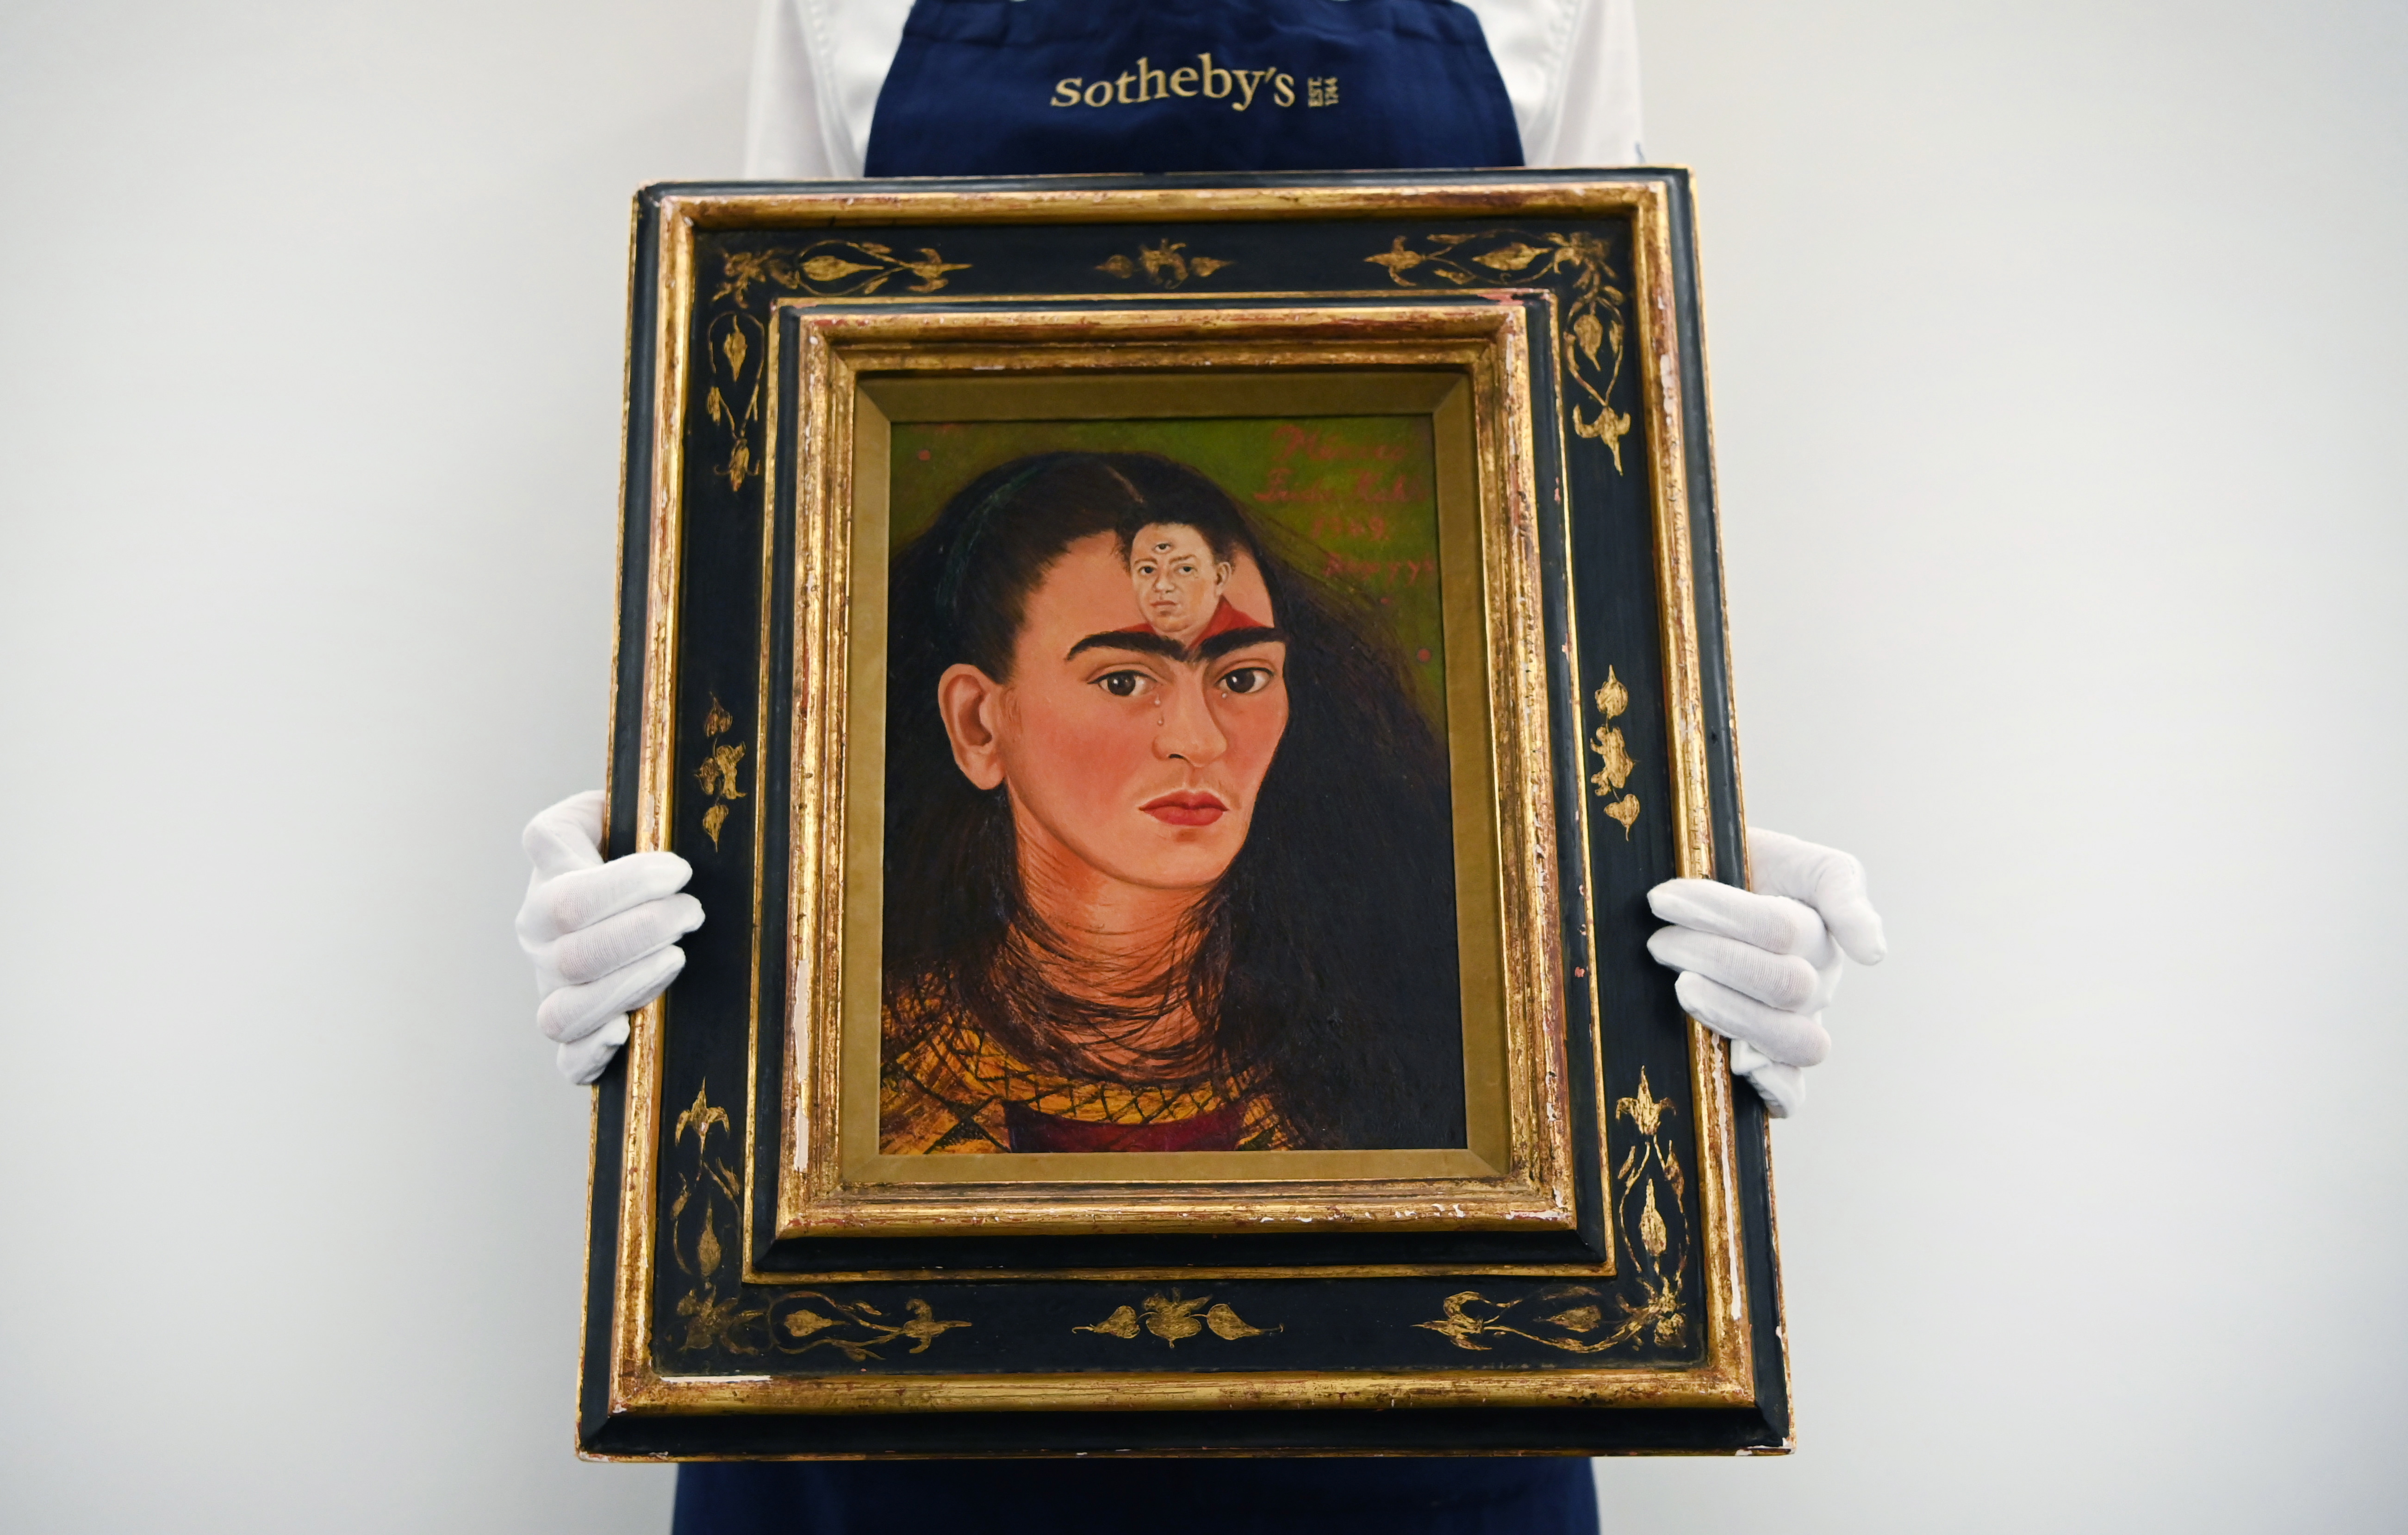 Ventas récord en Sotheby’s: la casa de subastas alcanzó lo 7.3 millones de dólares en 2021